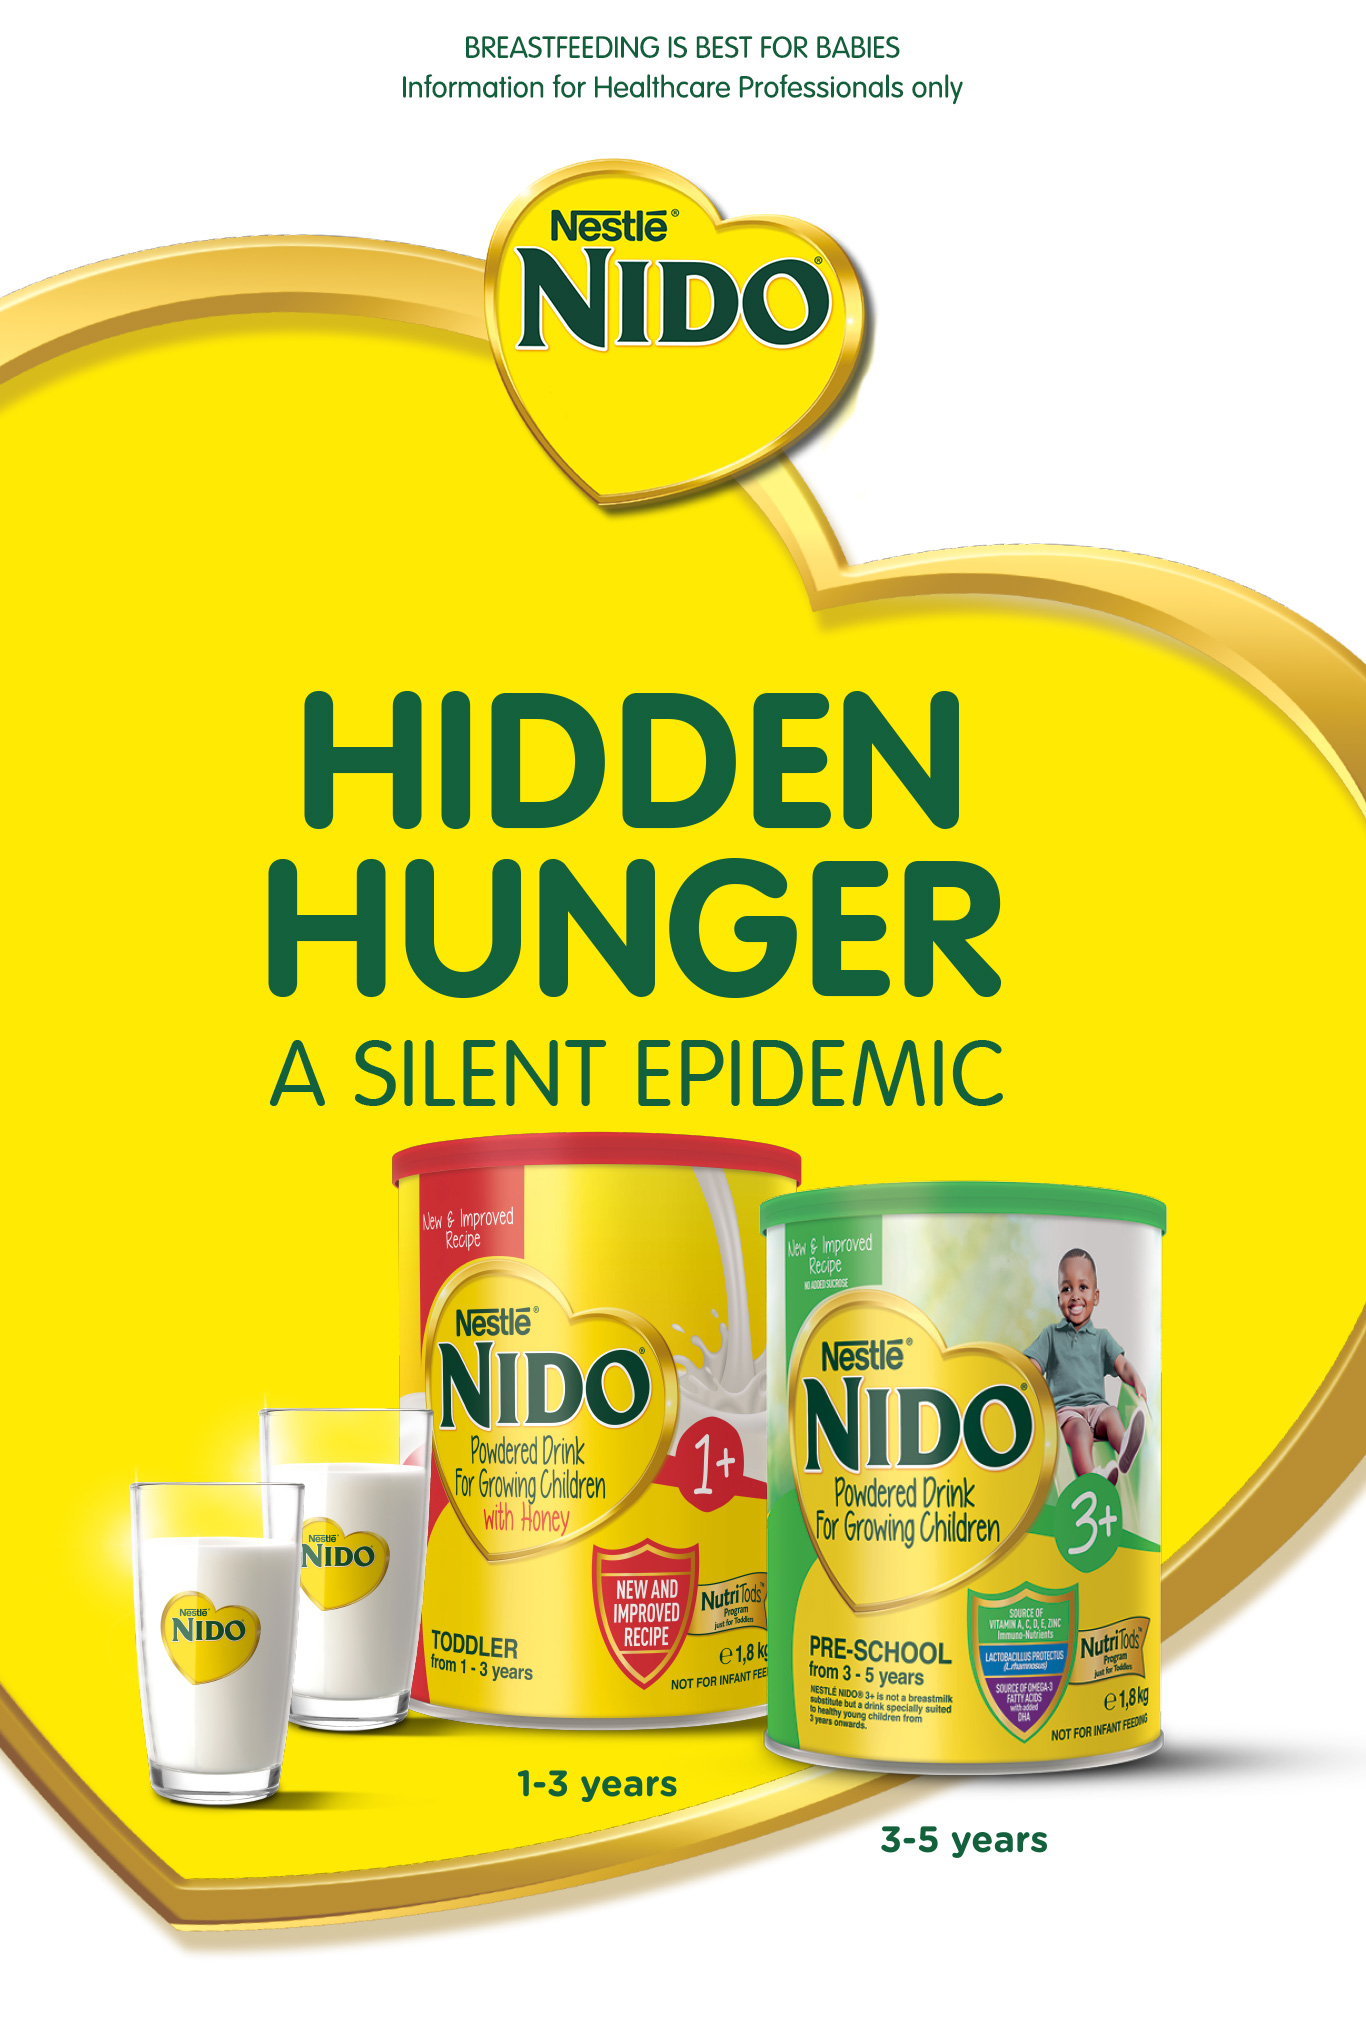 Nido Hidden Hunger